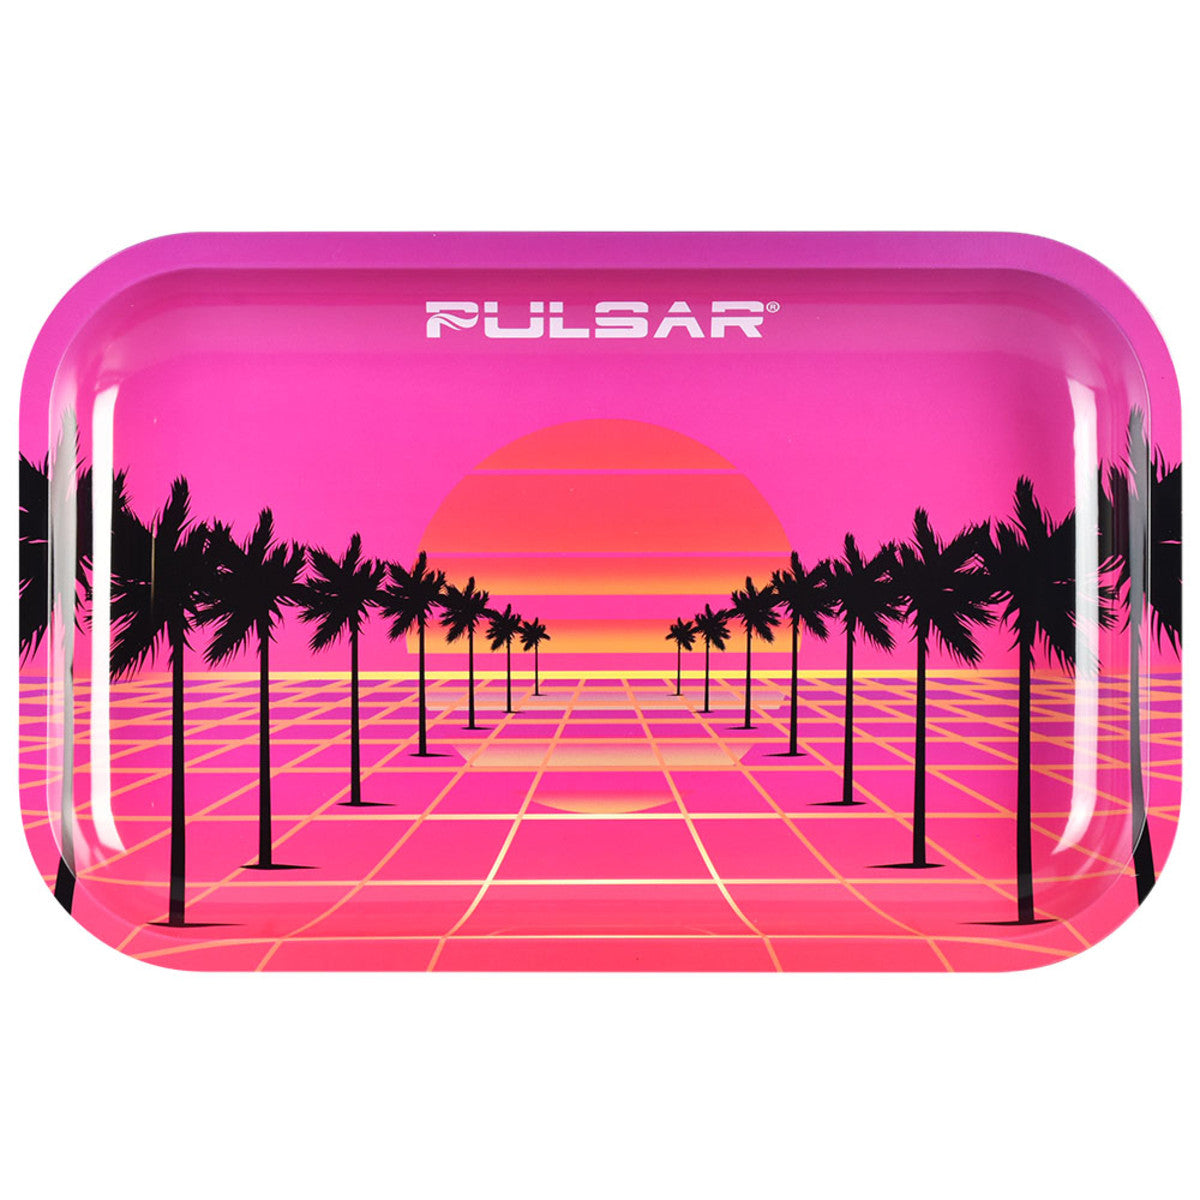 pulsar metal rolling tray 84 sunset pink orange